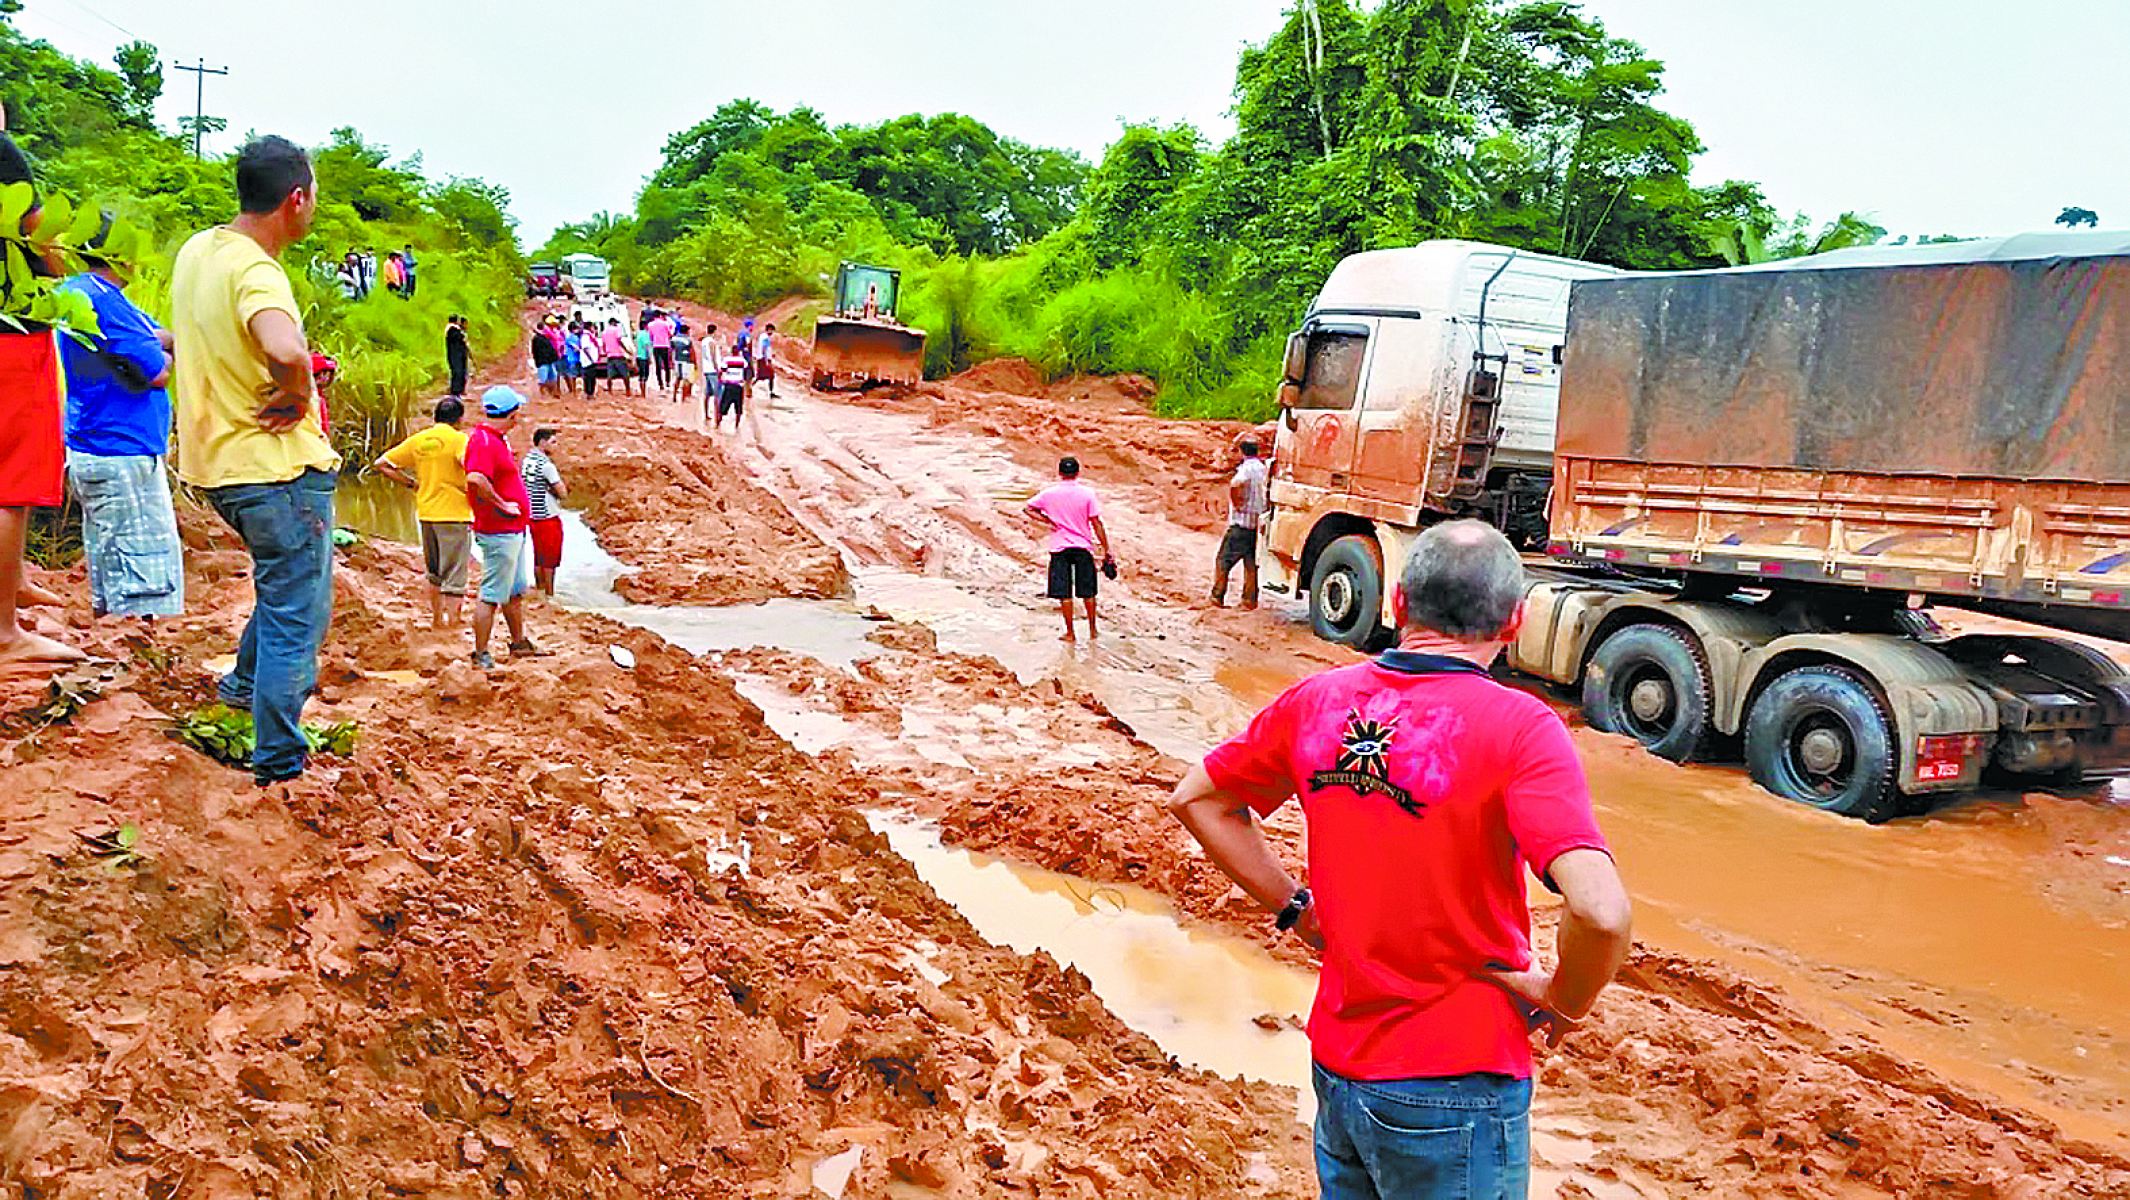 Série rodovias Transamazônica, um lamaçal de problemas